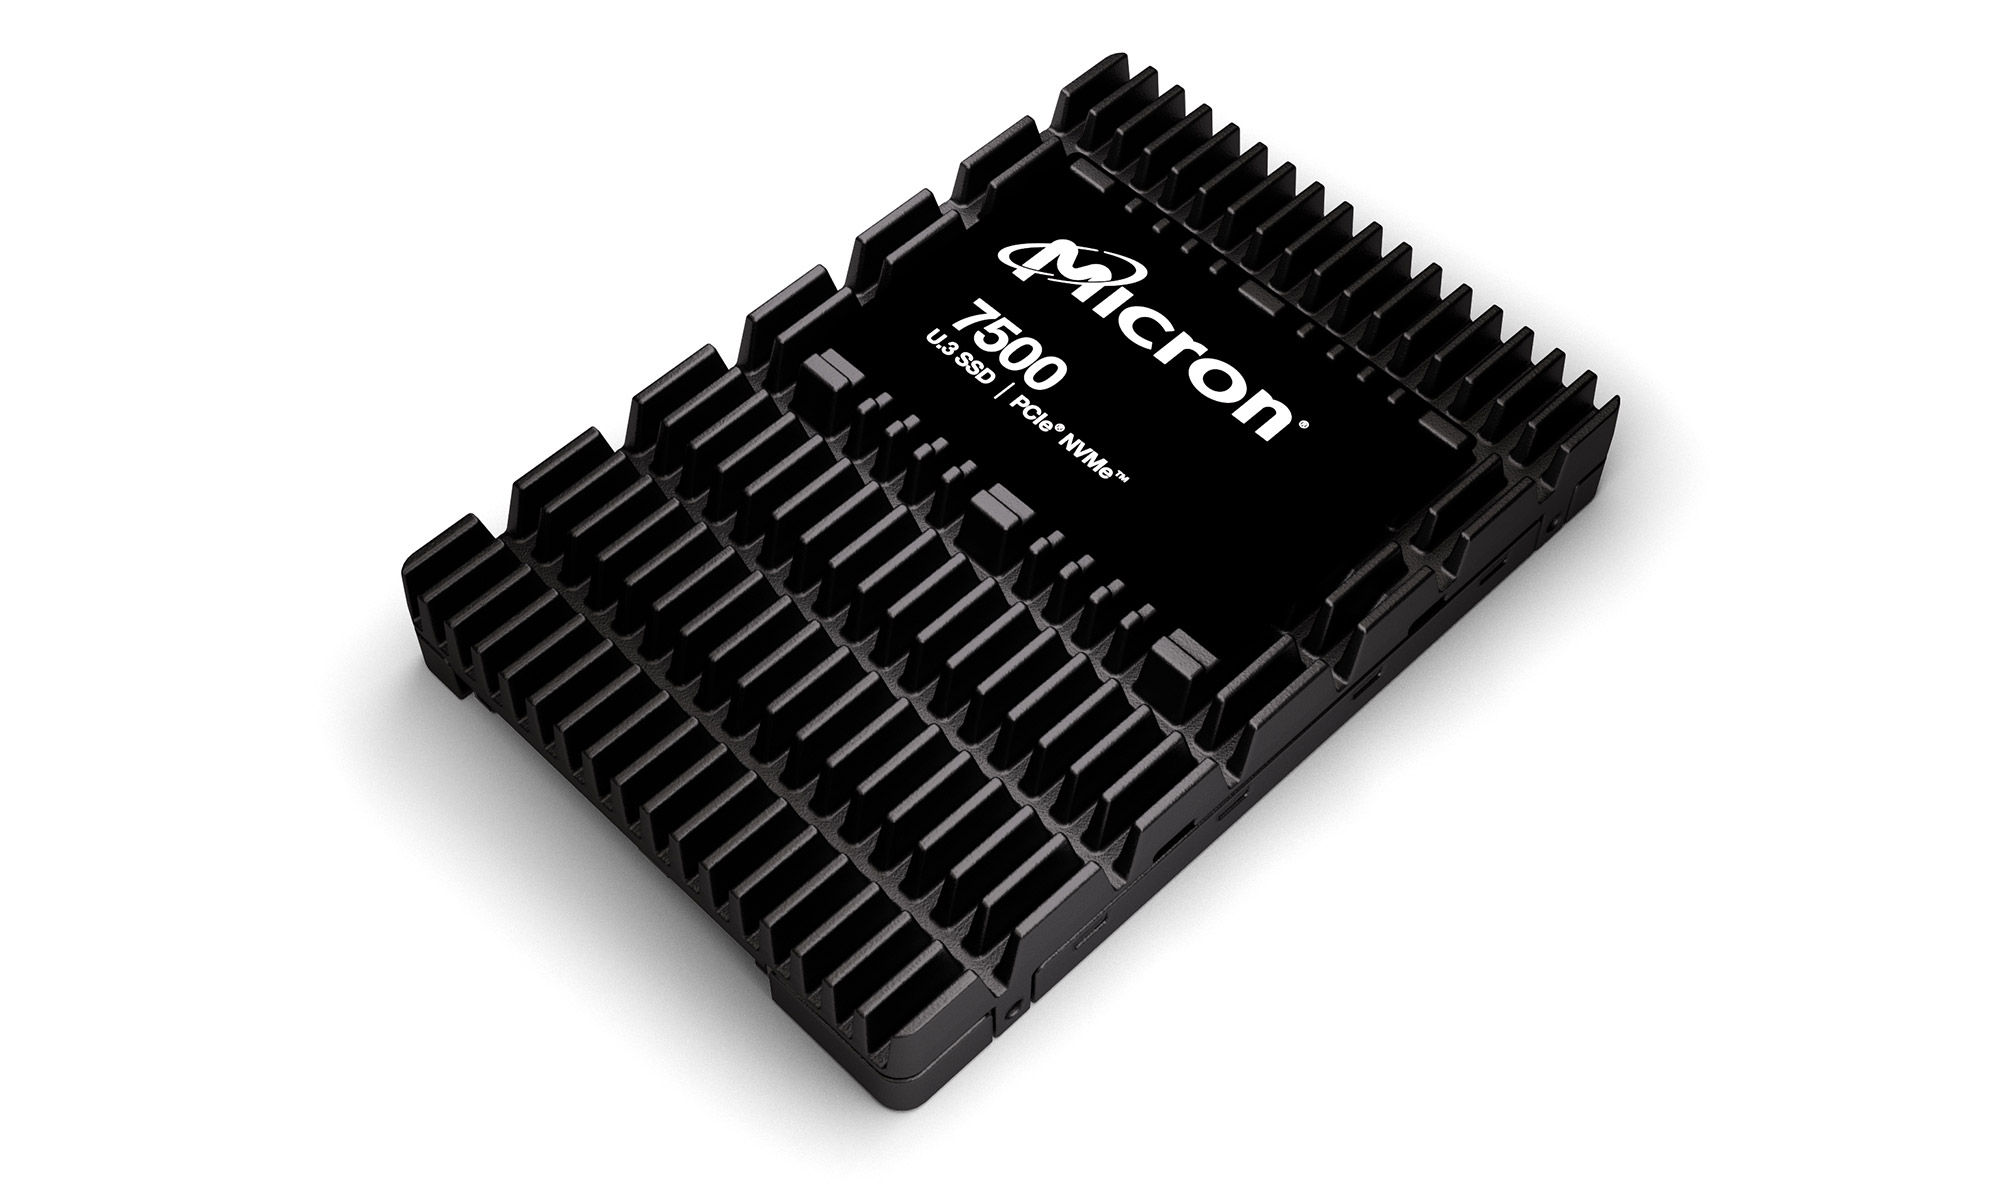 Micron 7500 Nvme SSD